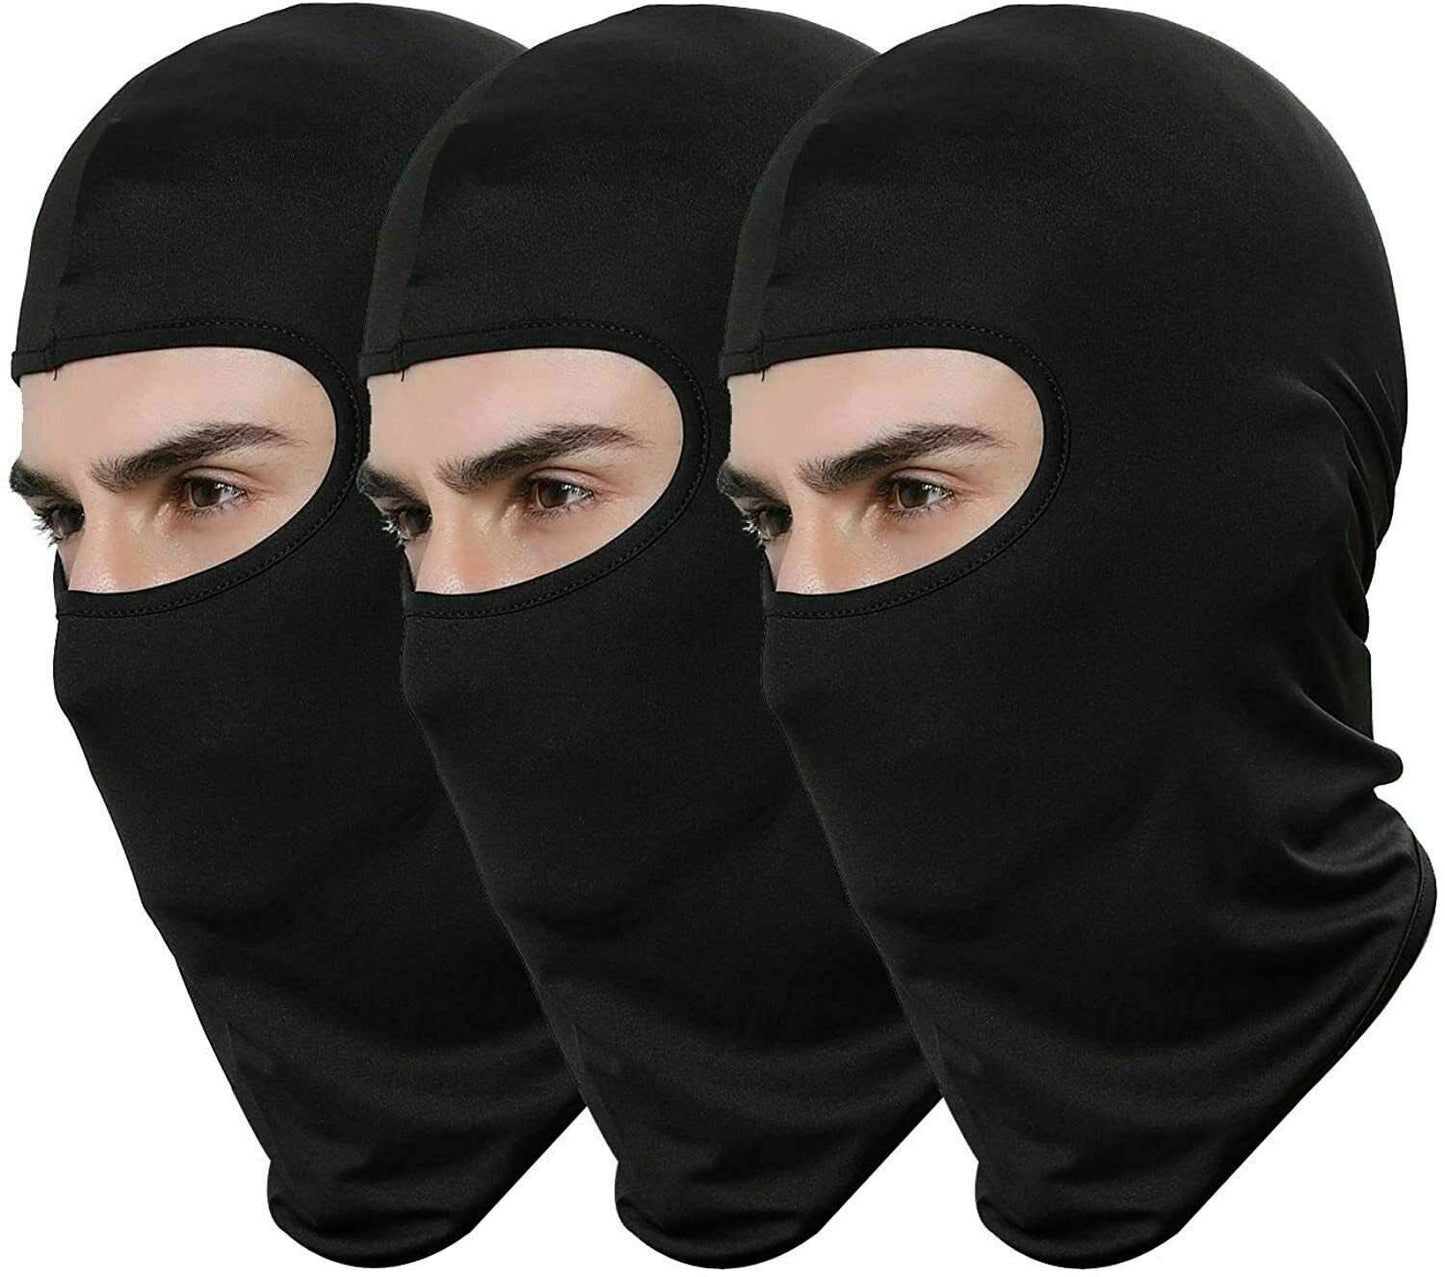 3 Pack Black Face Masks for Men